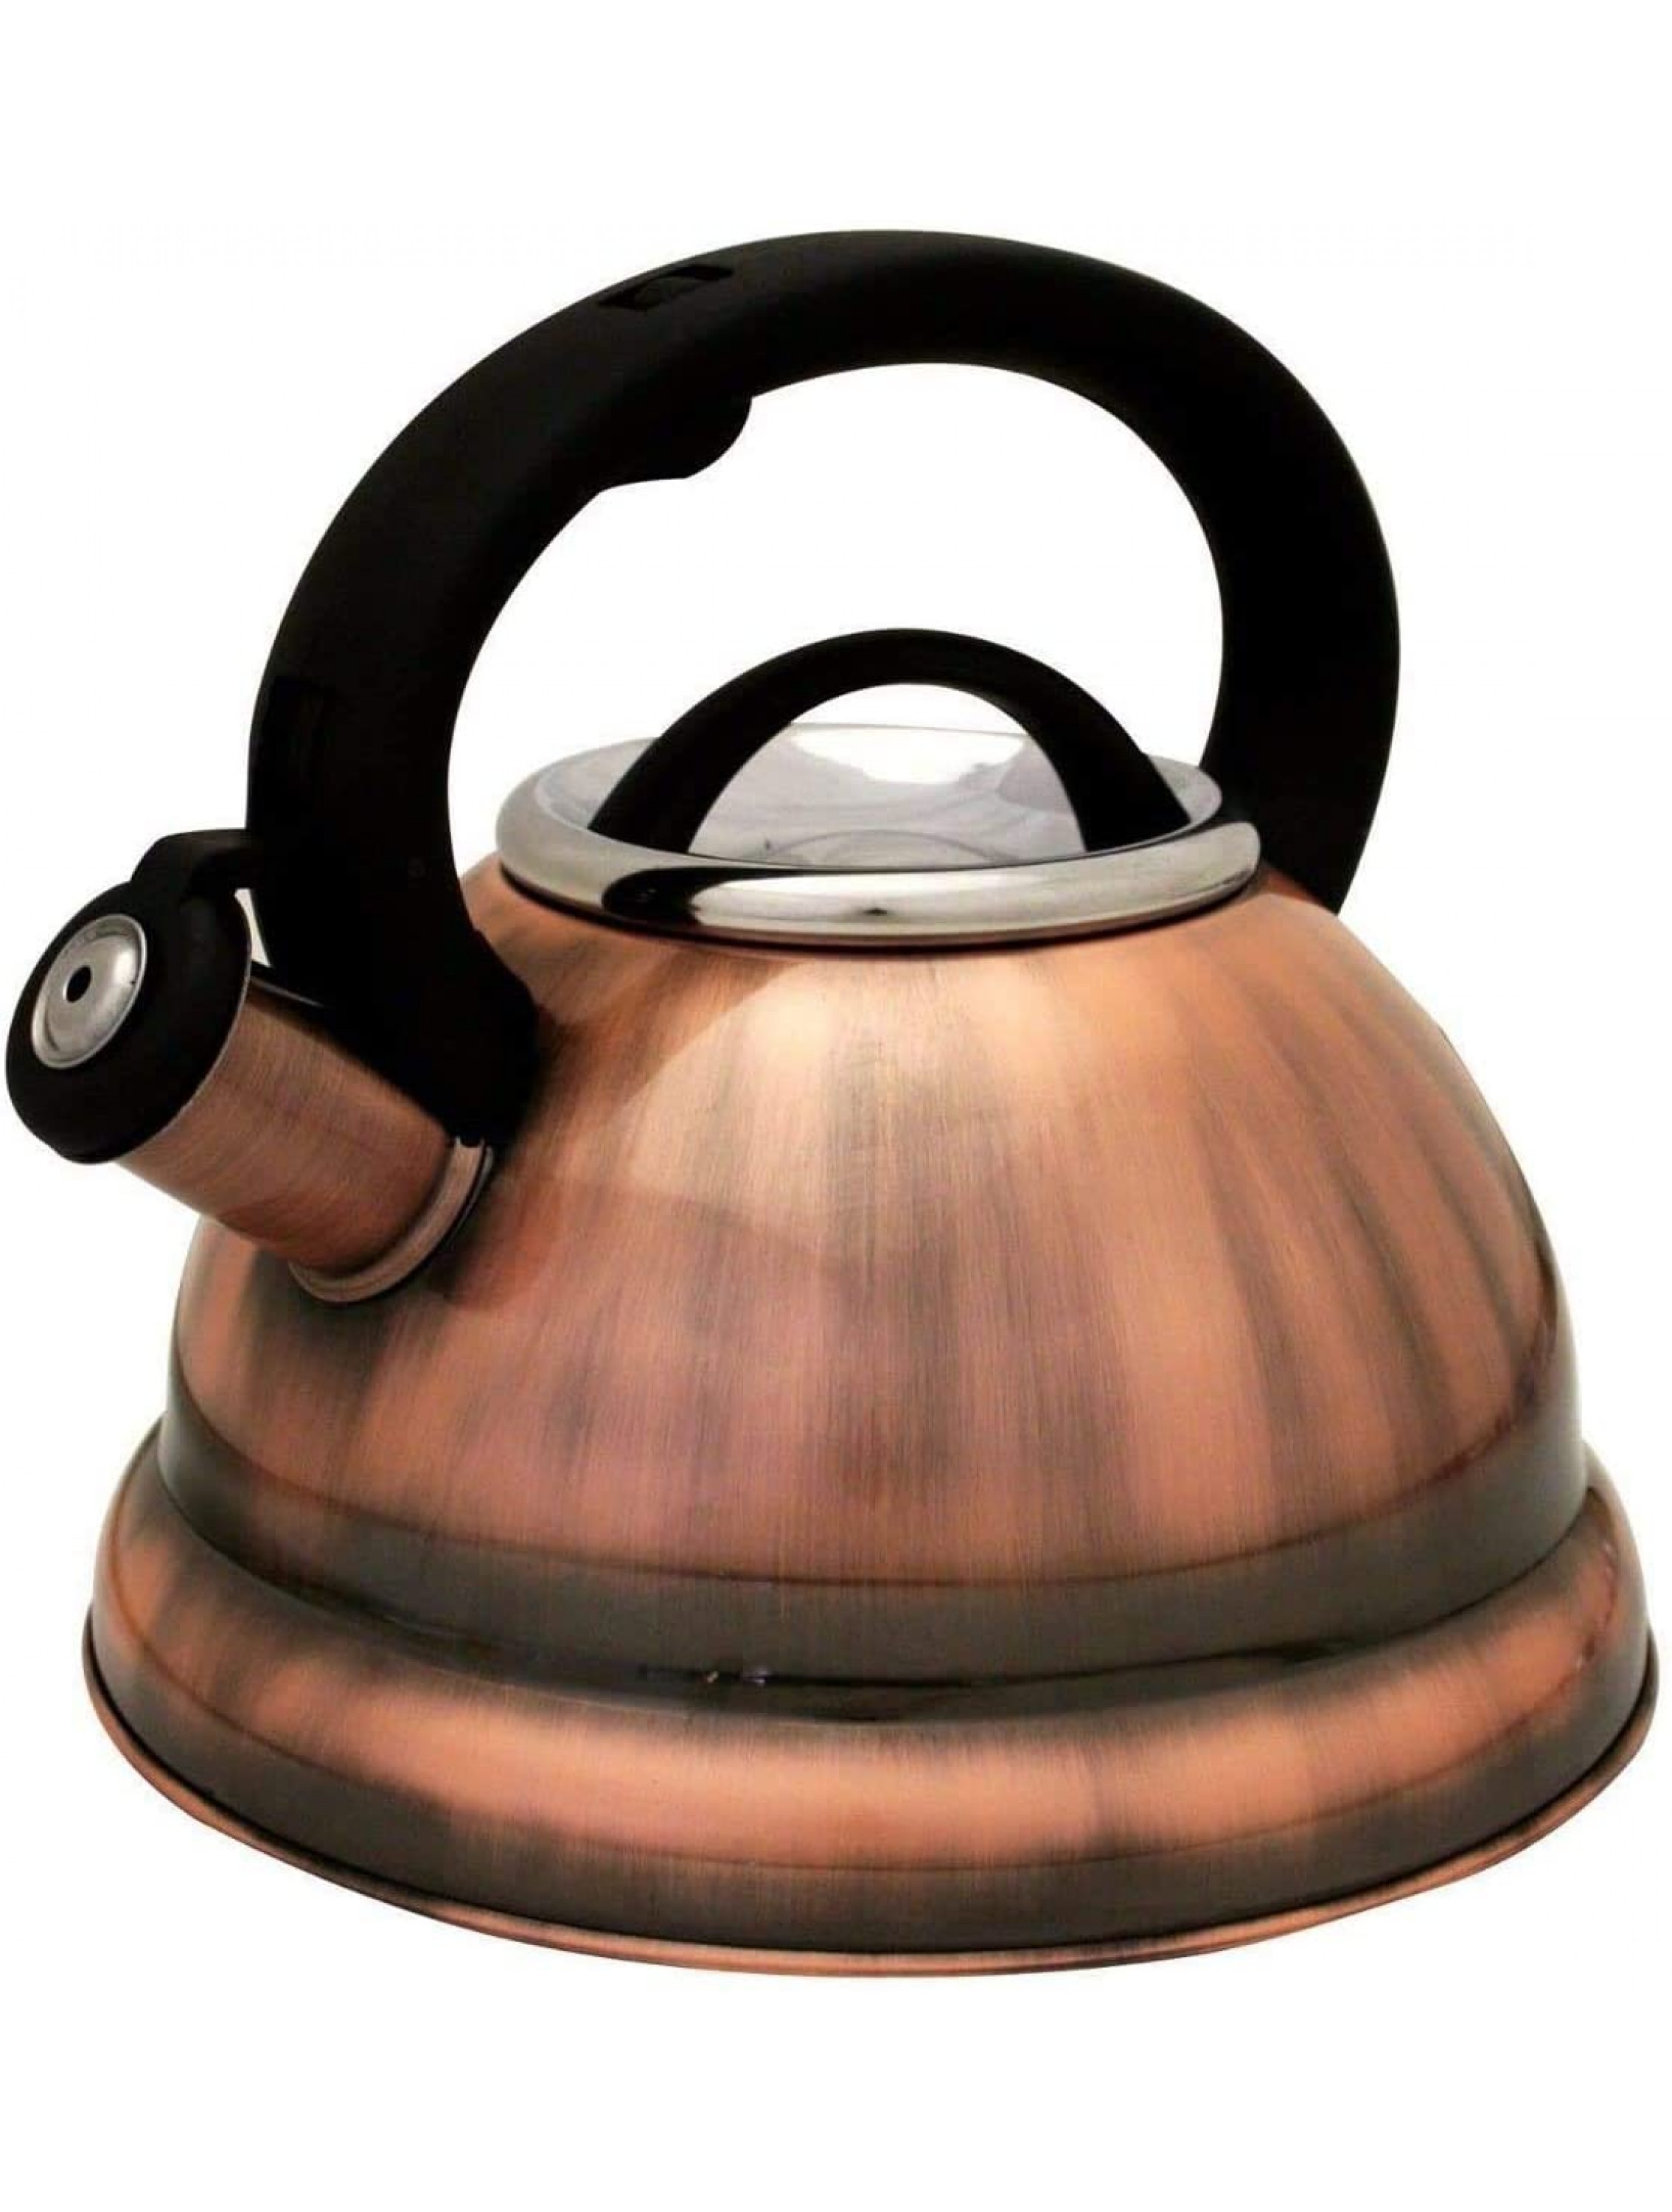 KCHEX 2.8 L Antique Copper Stainless Steel Whistling Tea Kettle Tea Maker Pot 3 Quarts - B13AWK245